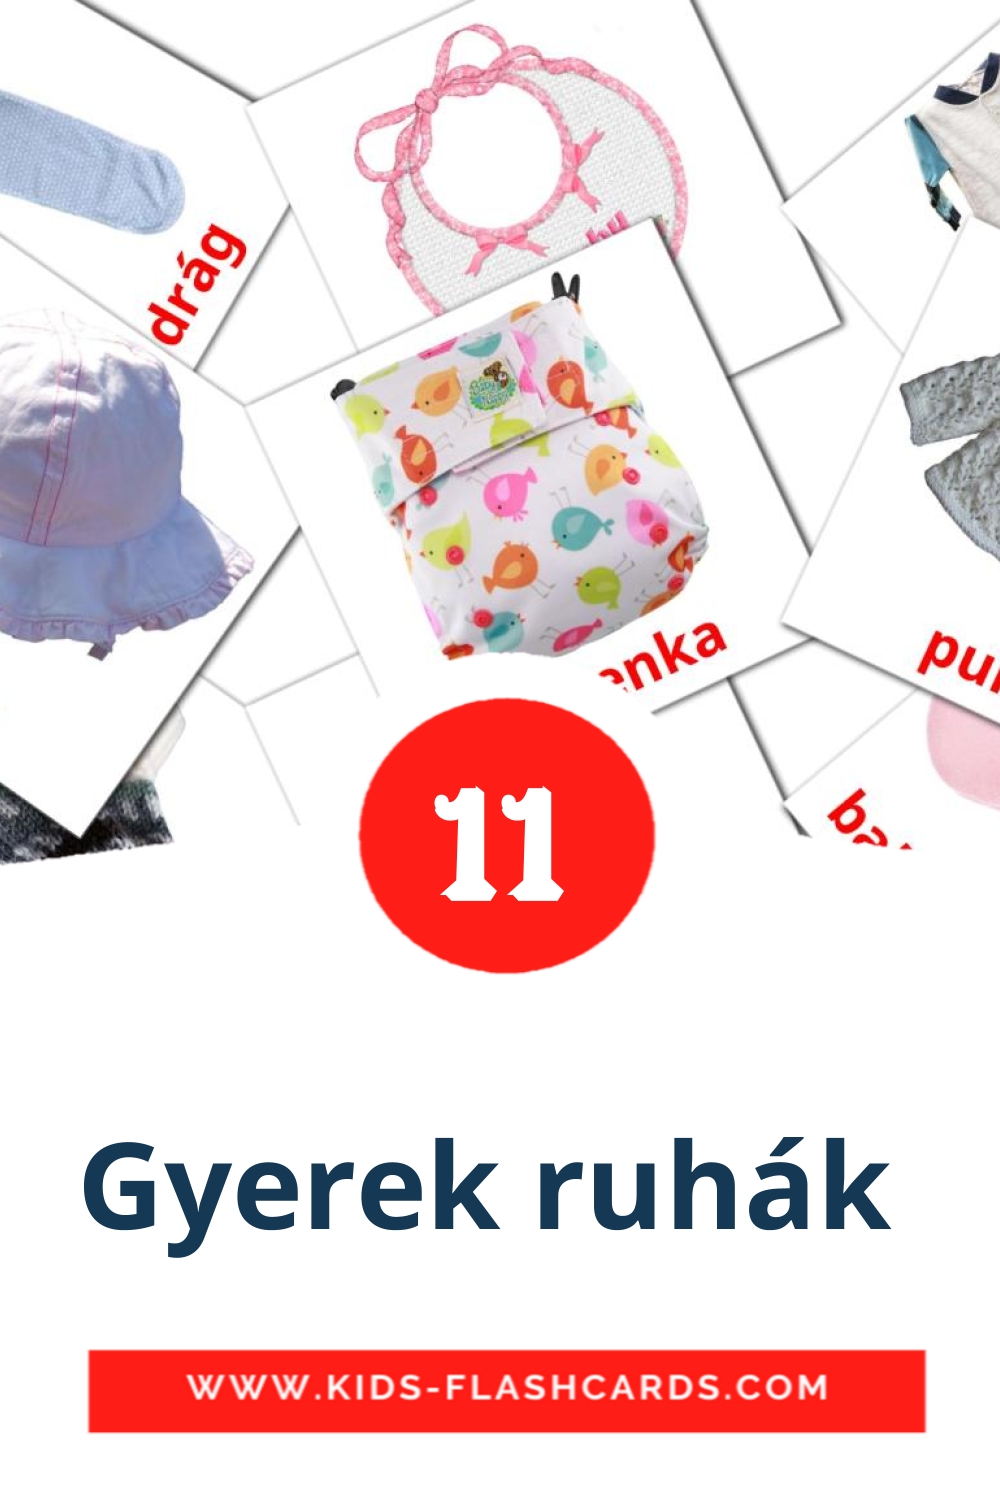 Gyerek ruhák  на венгерском для Детского Сада (12 карточек)